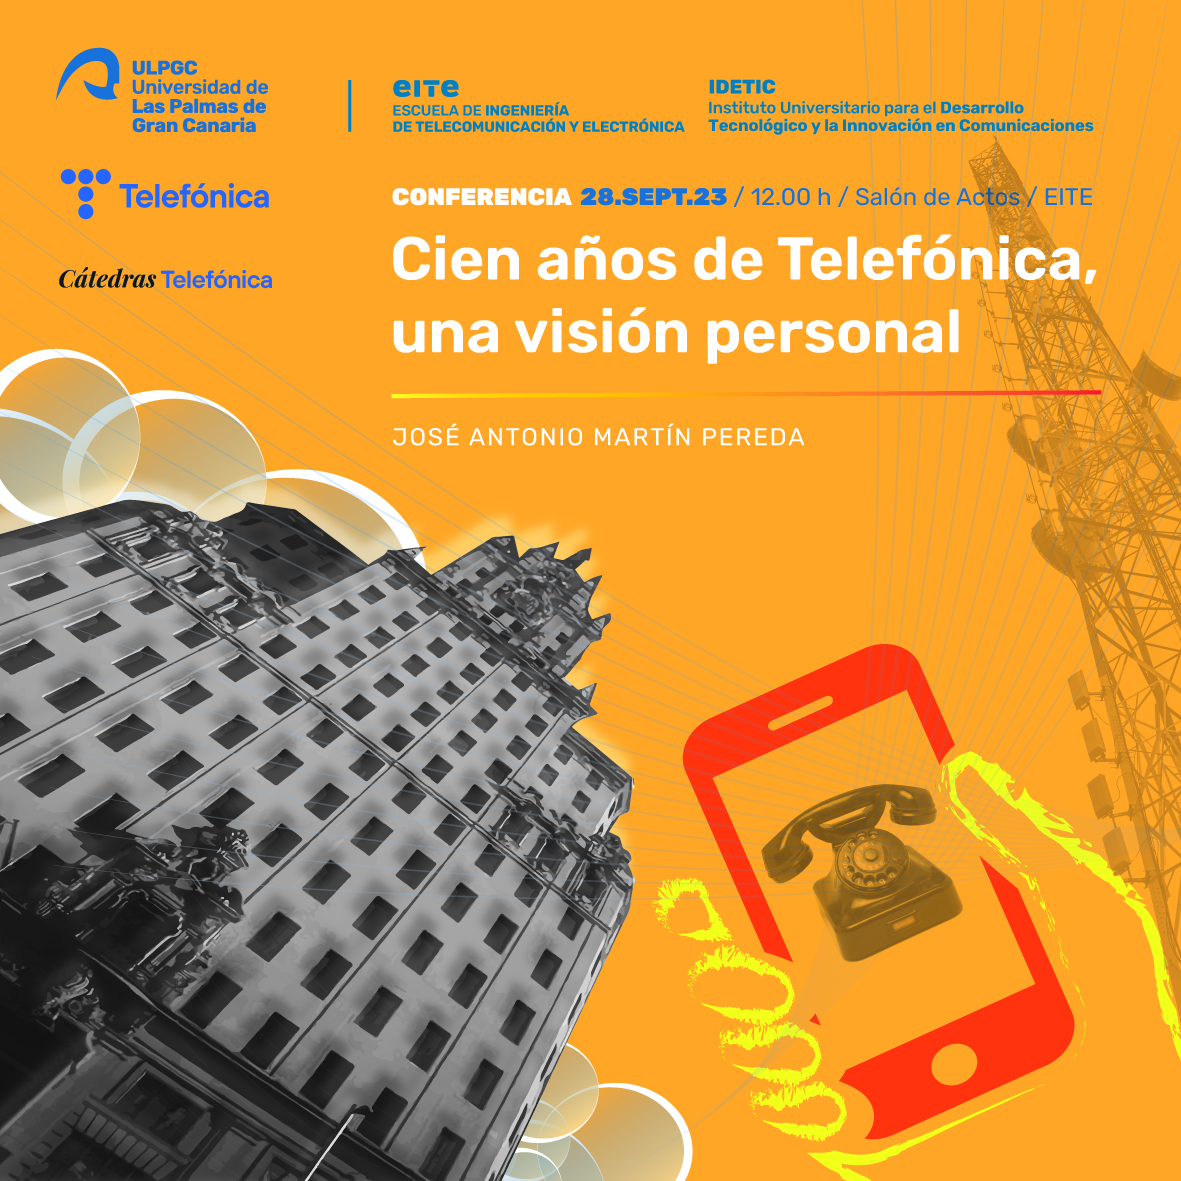 Conferencia «Cien años de Telefónica, una visión personal» por José Antonio Martín Pereda